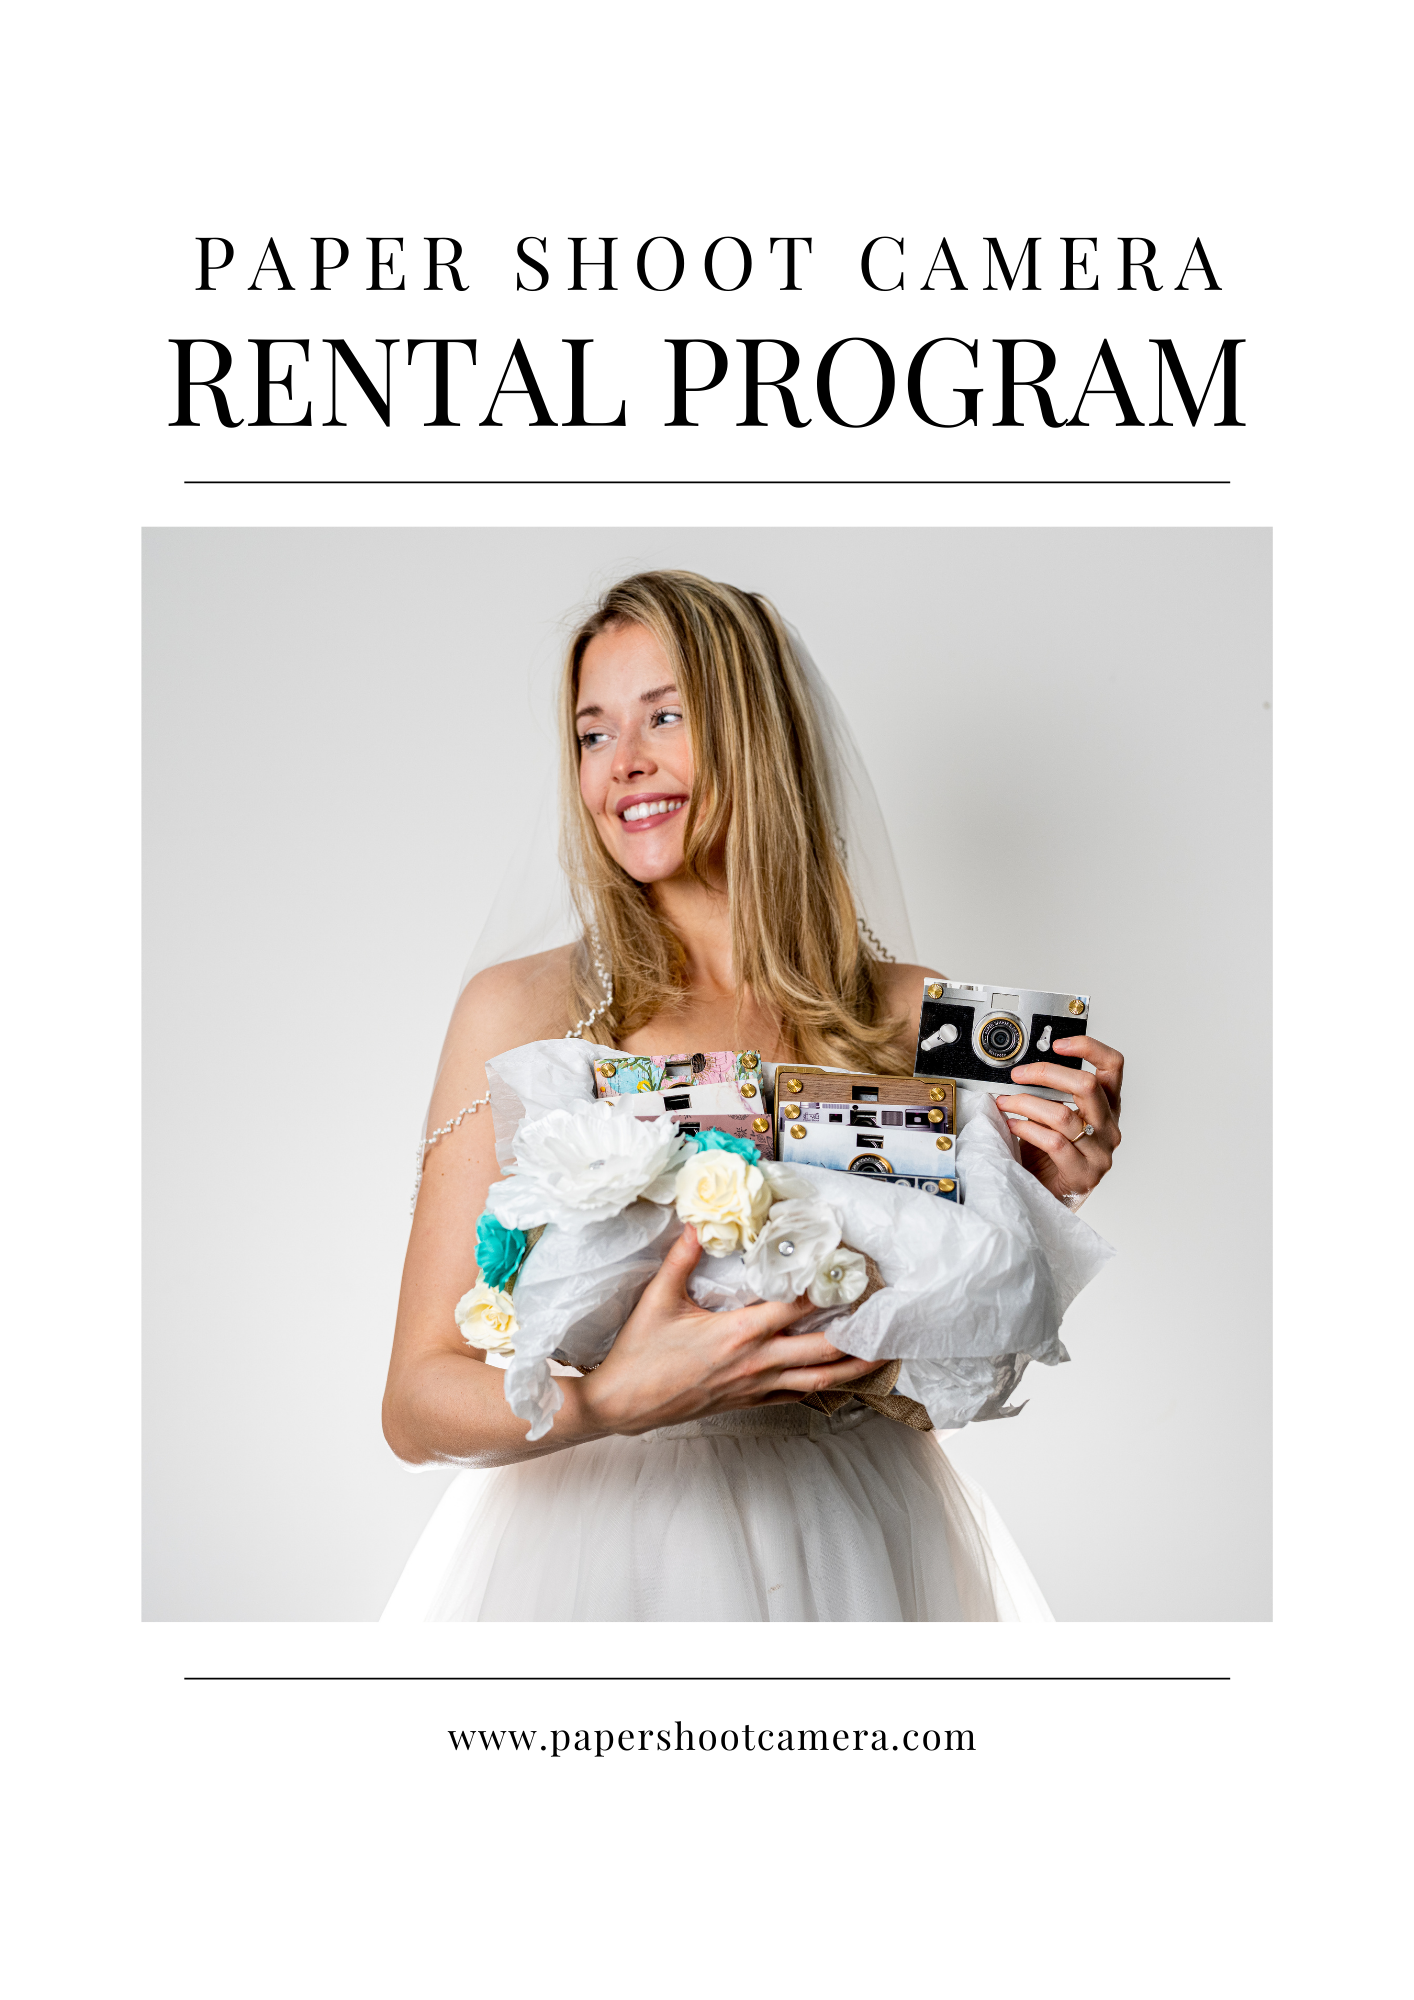 New Paper Shoot Rental Program - Paper Shoot Camera